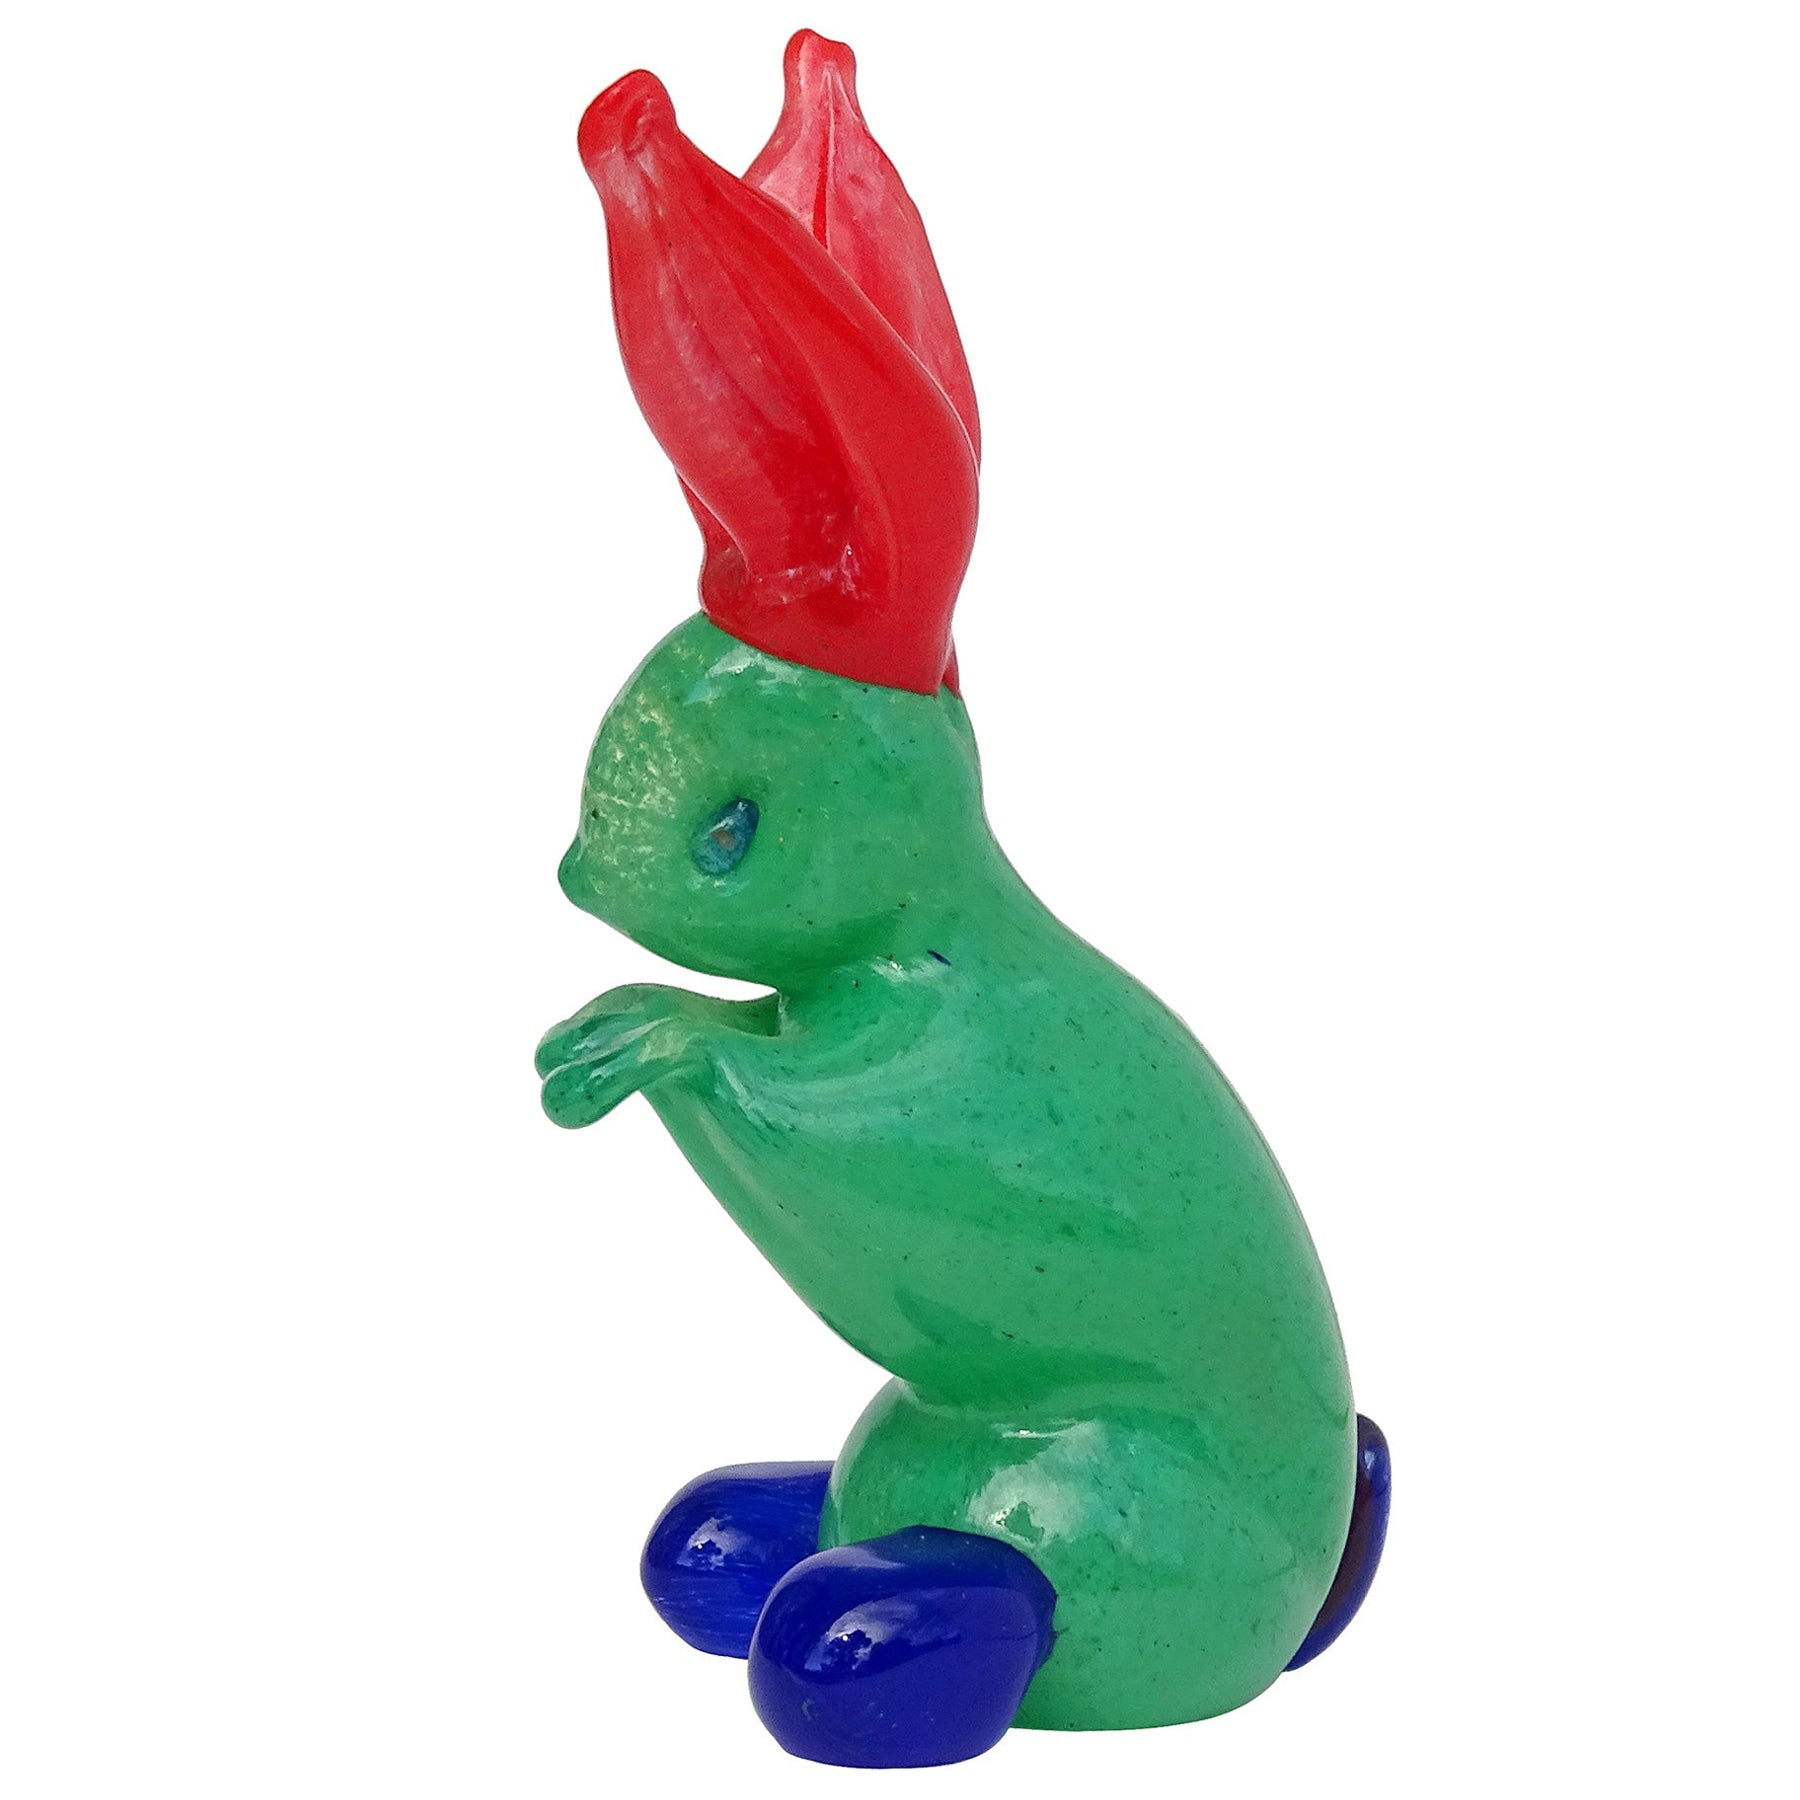 Murano Gambaro Poggi Green Red Blue Italian Art Glass Rabbit Figurine Sculpture